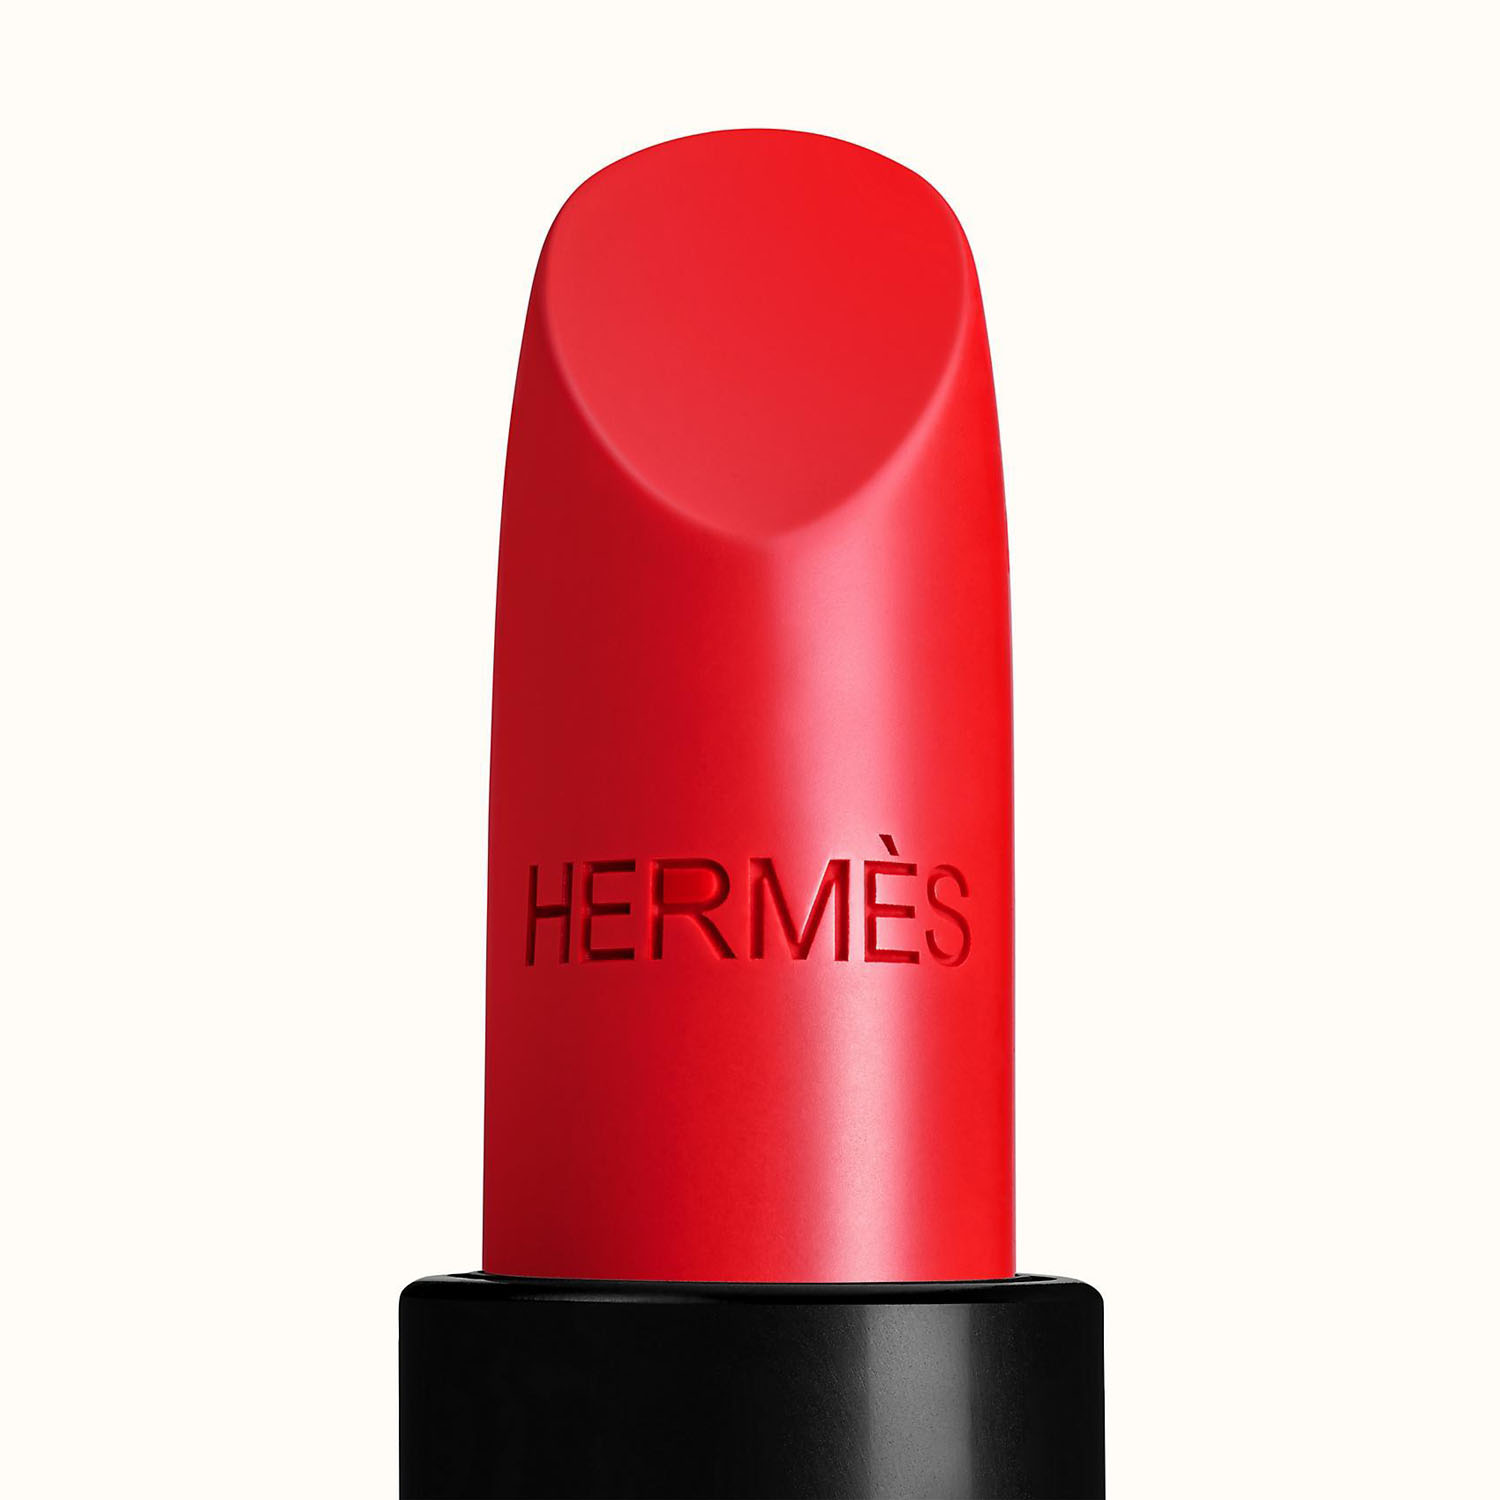 Hermes 64 Son Lì Rouge Casaque Màu Đỏ Tươi